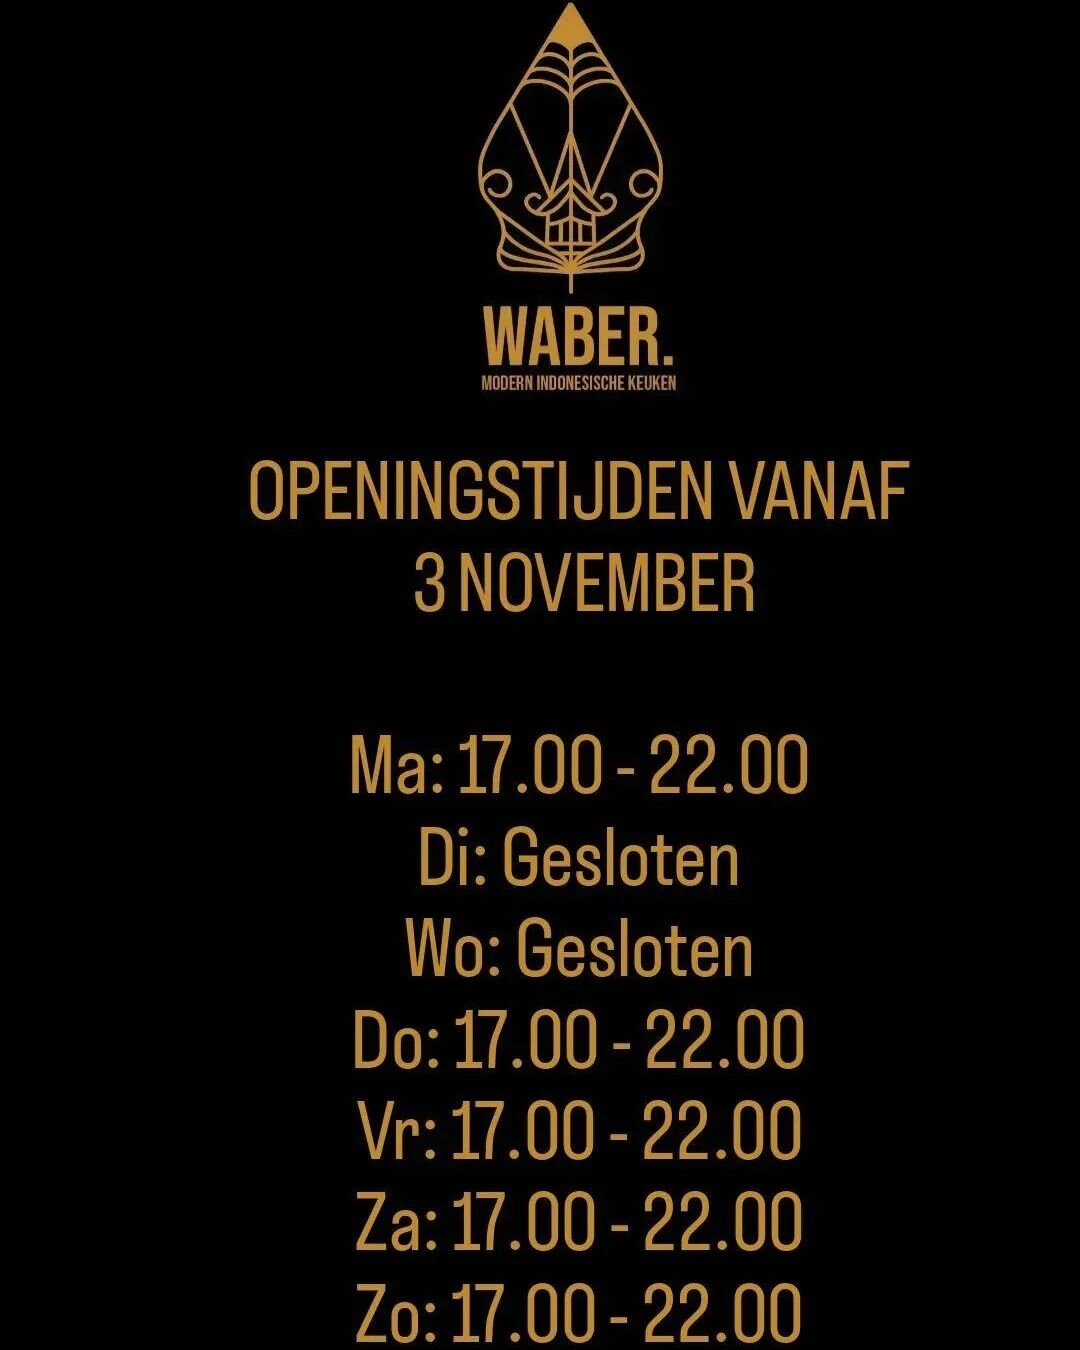 ONZE OPENINGSTIJDEN 

Hierboven vindt u onze openingstijden. Reserveren kan al via info@restaurantwaber.nl! De website zal zeer binnenkort gelanceerd worden 👌🏼

Ter info: Wij zijn 1e en 2e kerstdag gesloten. Kerstavond zijn wij wel open!